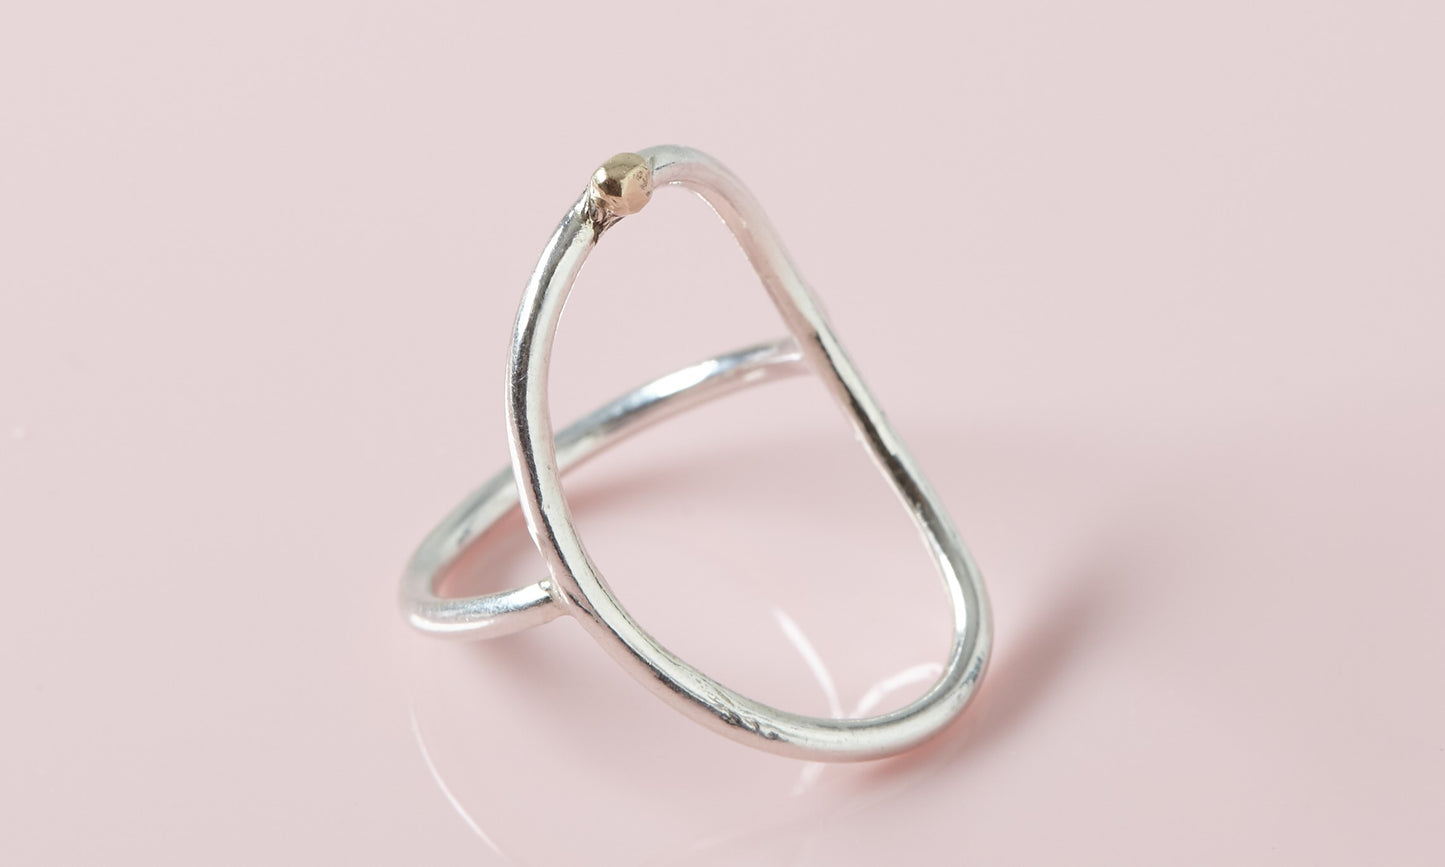 Long Breath Silver Ring by Spike Rocks, jewellery for women who rock